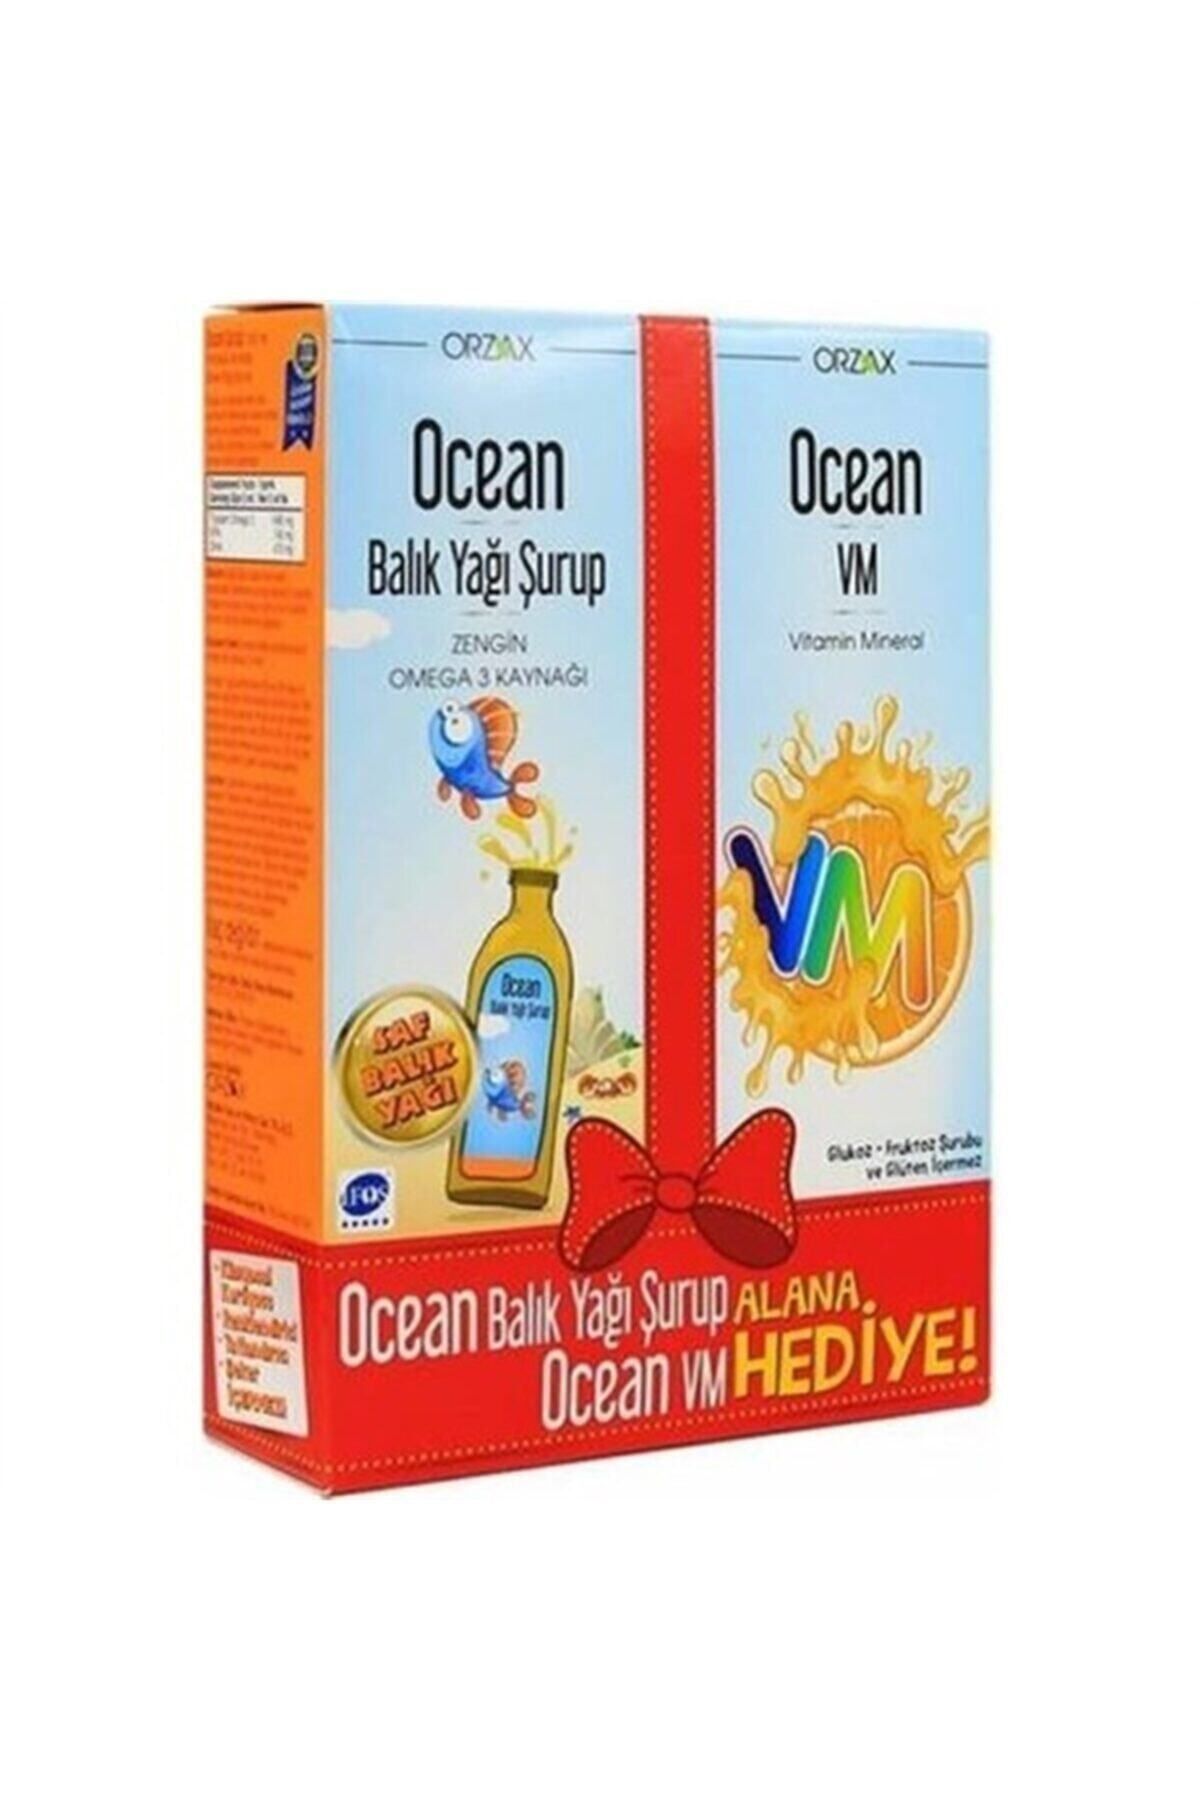 Ocean Portakallı Balık Yağı Şurubu + Vm Şurup Hediyeli Kofre kumbara hediyeli